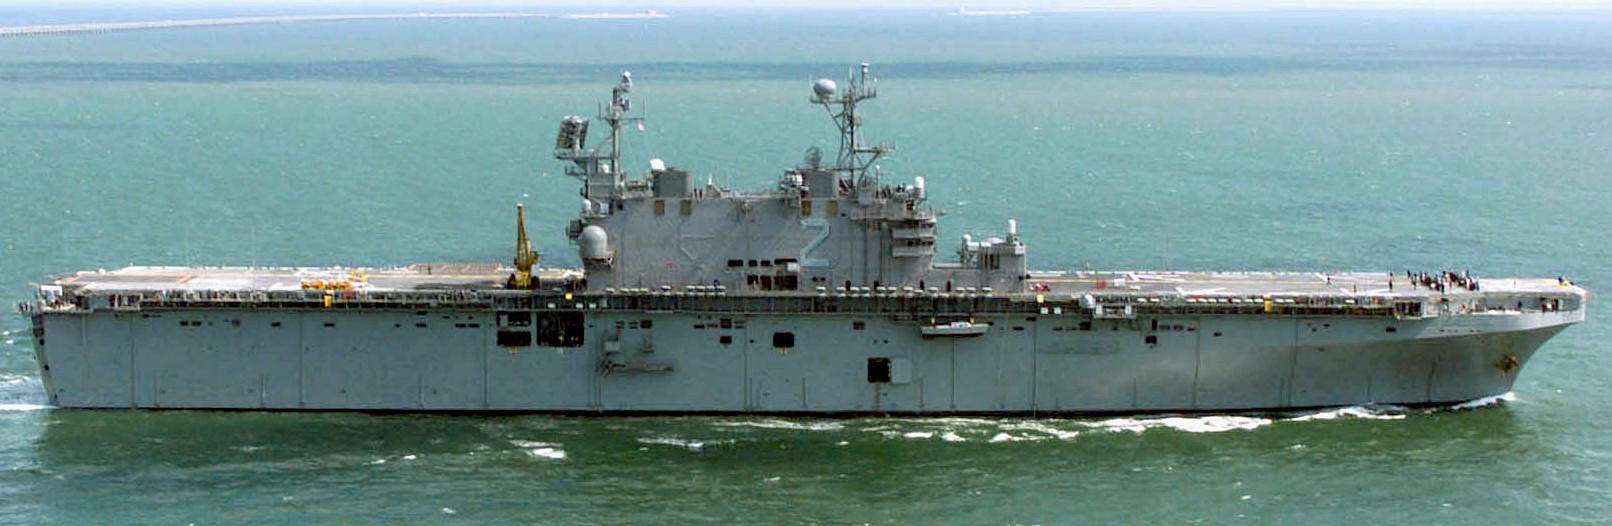 lha-2 uss saipan tarawa class amphibious assault ship us navy 11